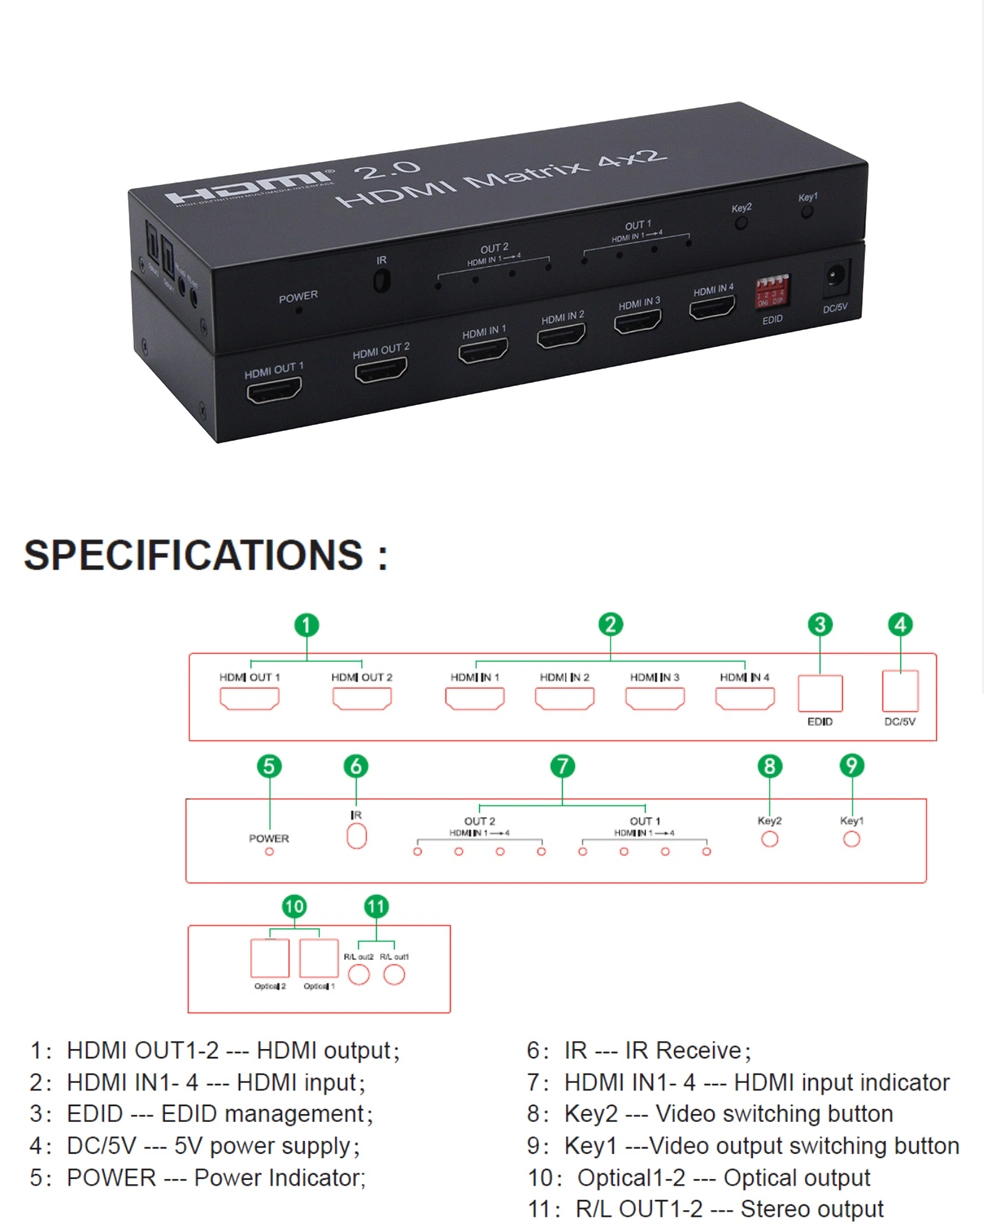 HDMI Matrix 4X2 4K@60Hz HDMI Switcher 4 in 2 out